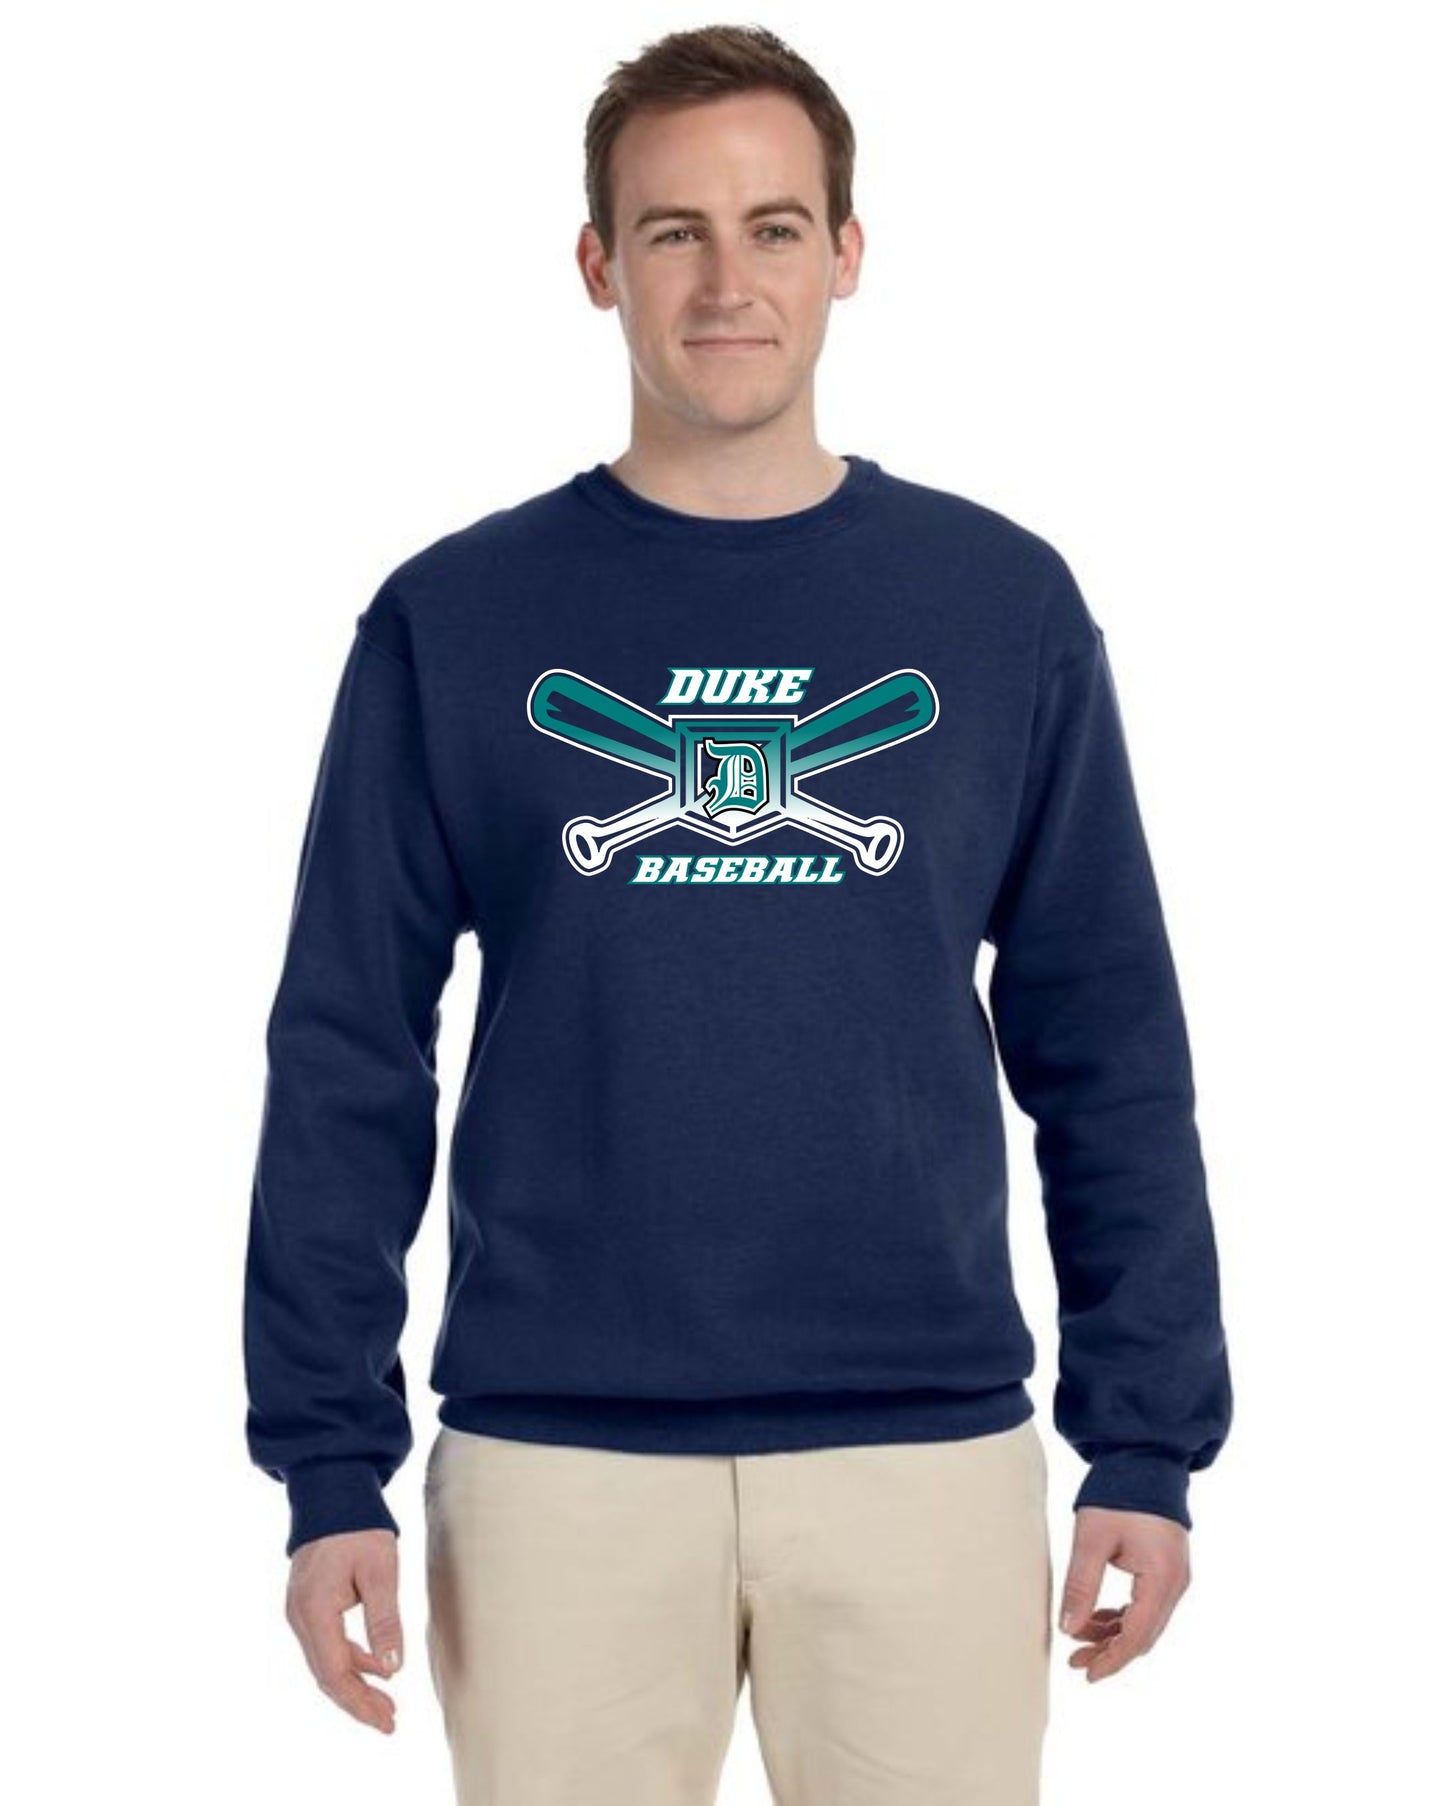 Duke Baseball Bats 50/50 Outerwear